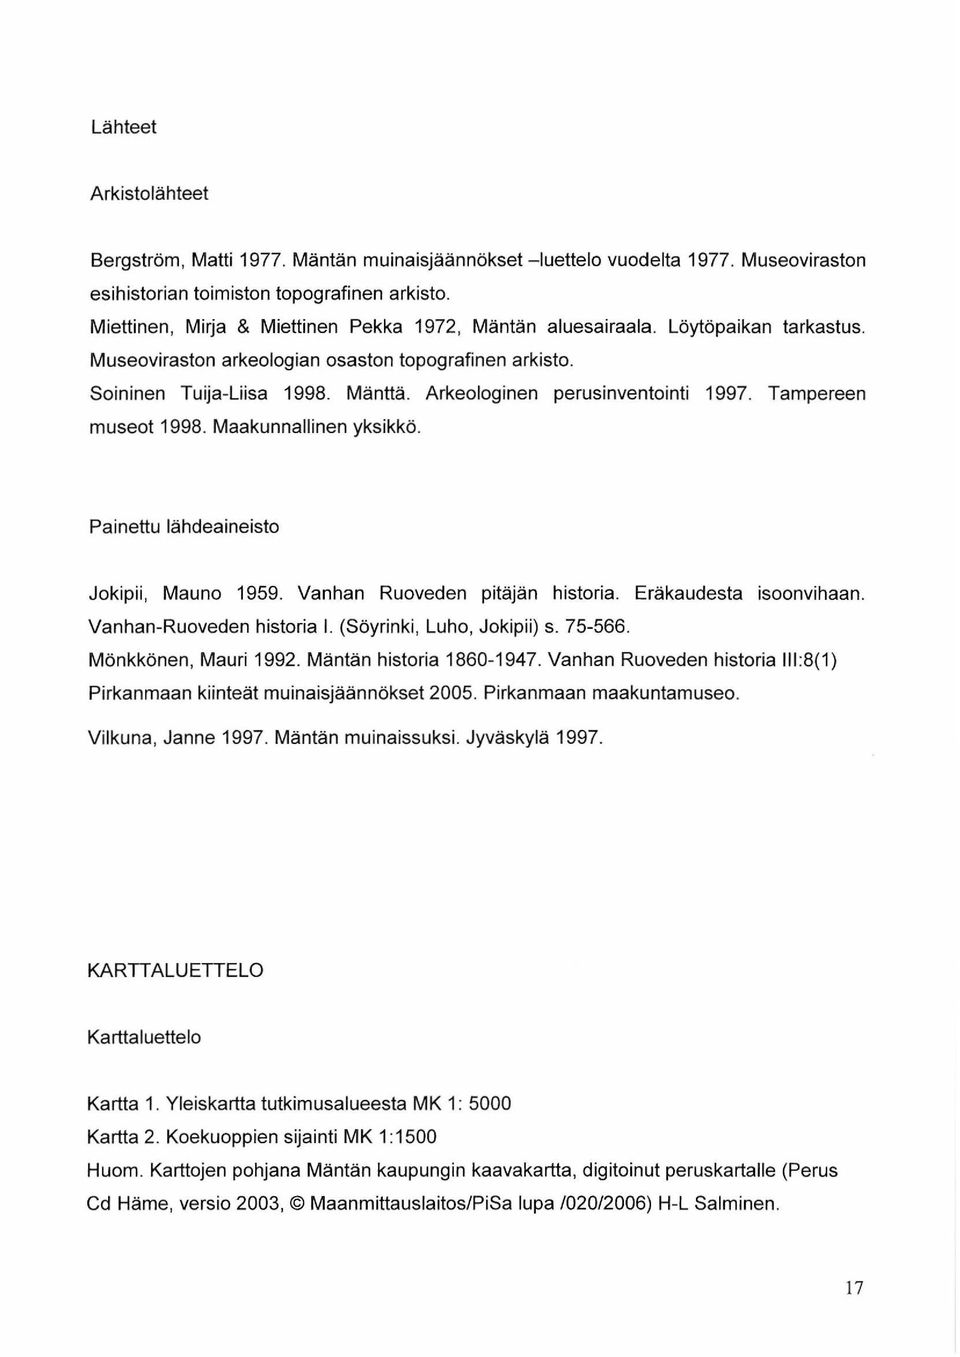 Arkeologinen perusinventointi 1997. Tampereen museot 1998. Maakunnallinen yksikkö. Painettu lähdeaineisto Jokipii, Mauno 1959. Vanhan Ruoveden pitäjän historia. Eräkaudesta isoonvihaan.